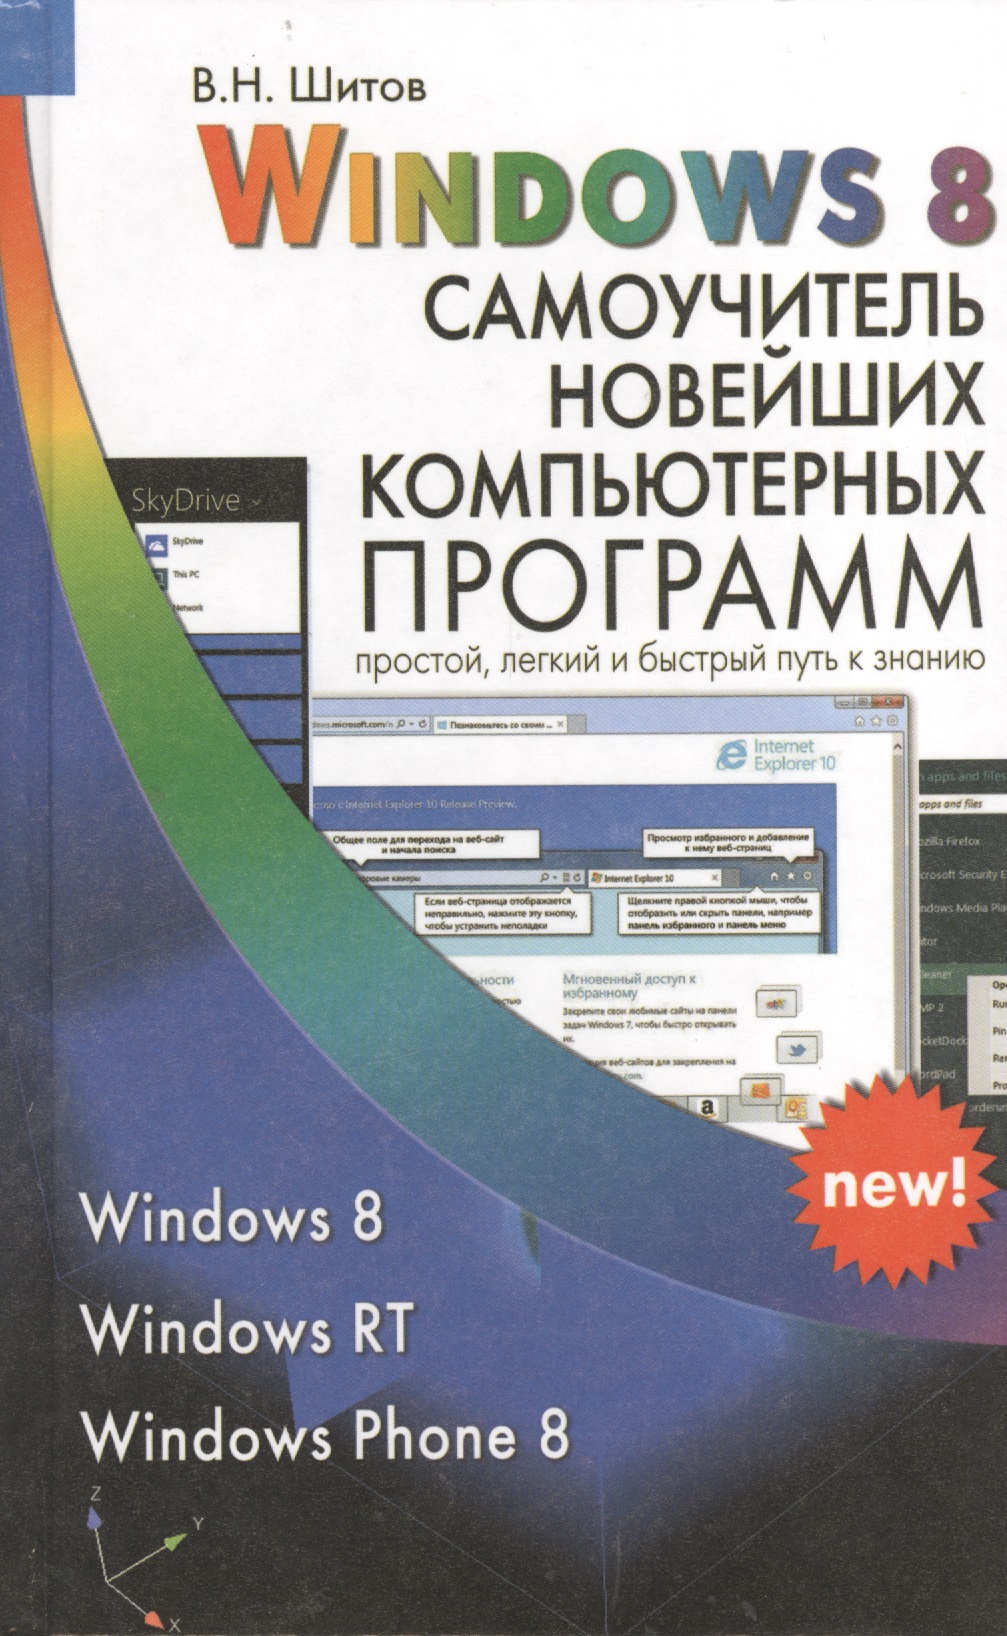 шитов виктор николаевич новейший самоучитель графических компьютерных программ Шитов Виктор Николаевич Windows 8 Самоучитель новейших компьютерных программ (Шитов)